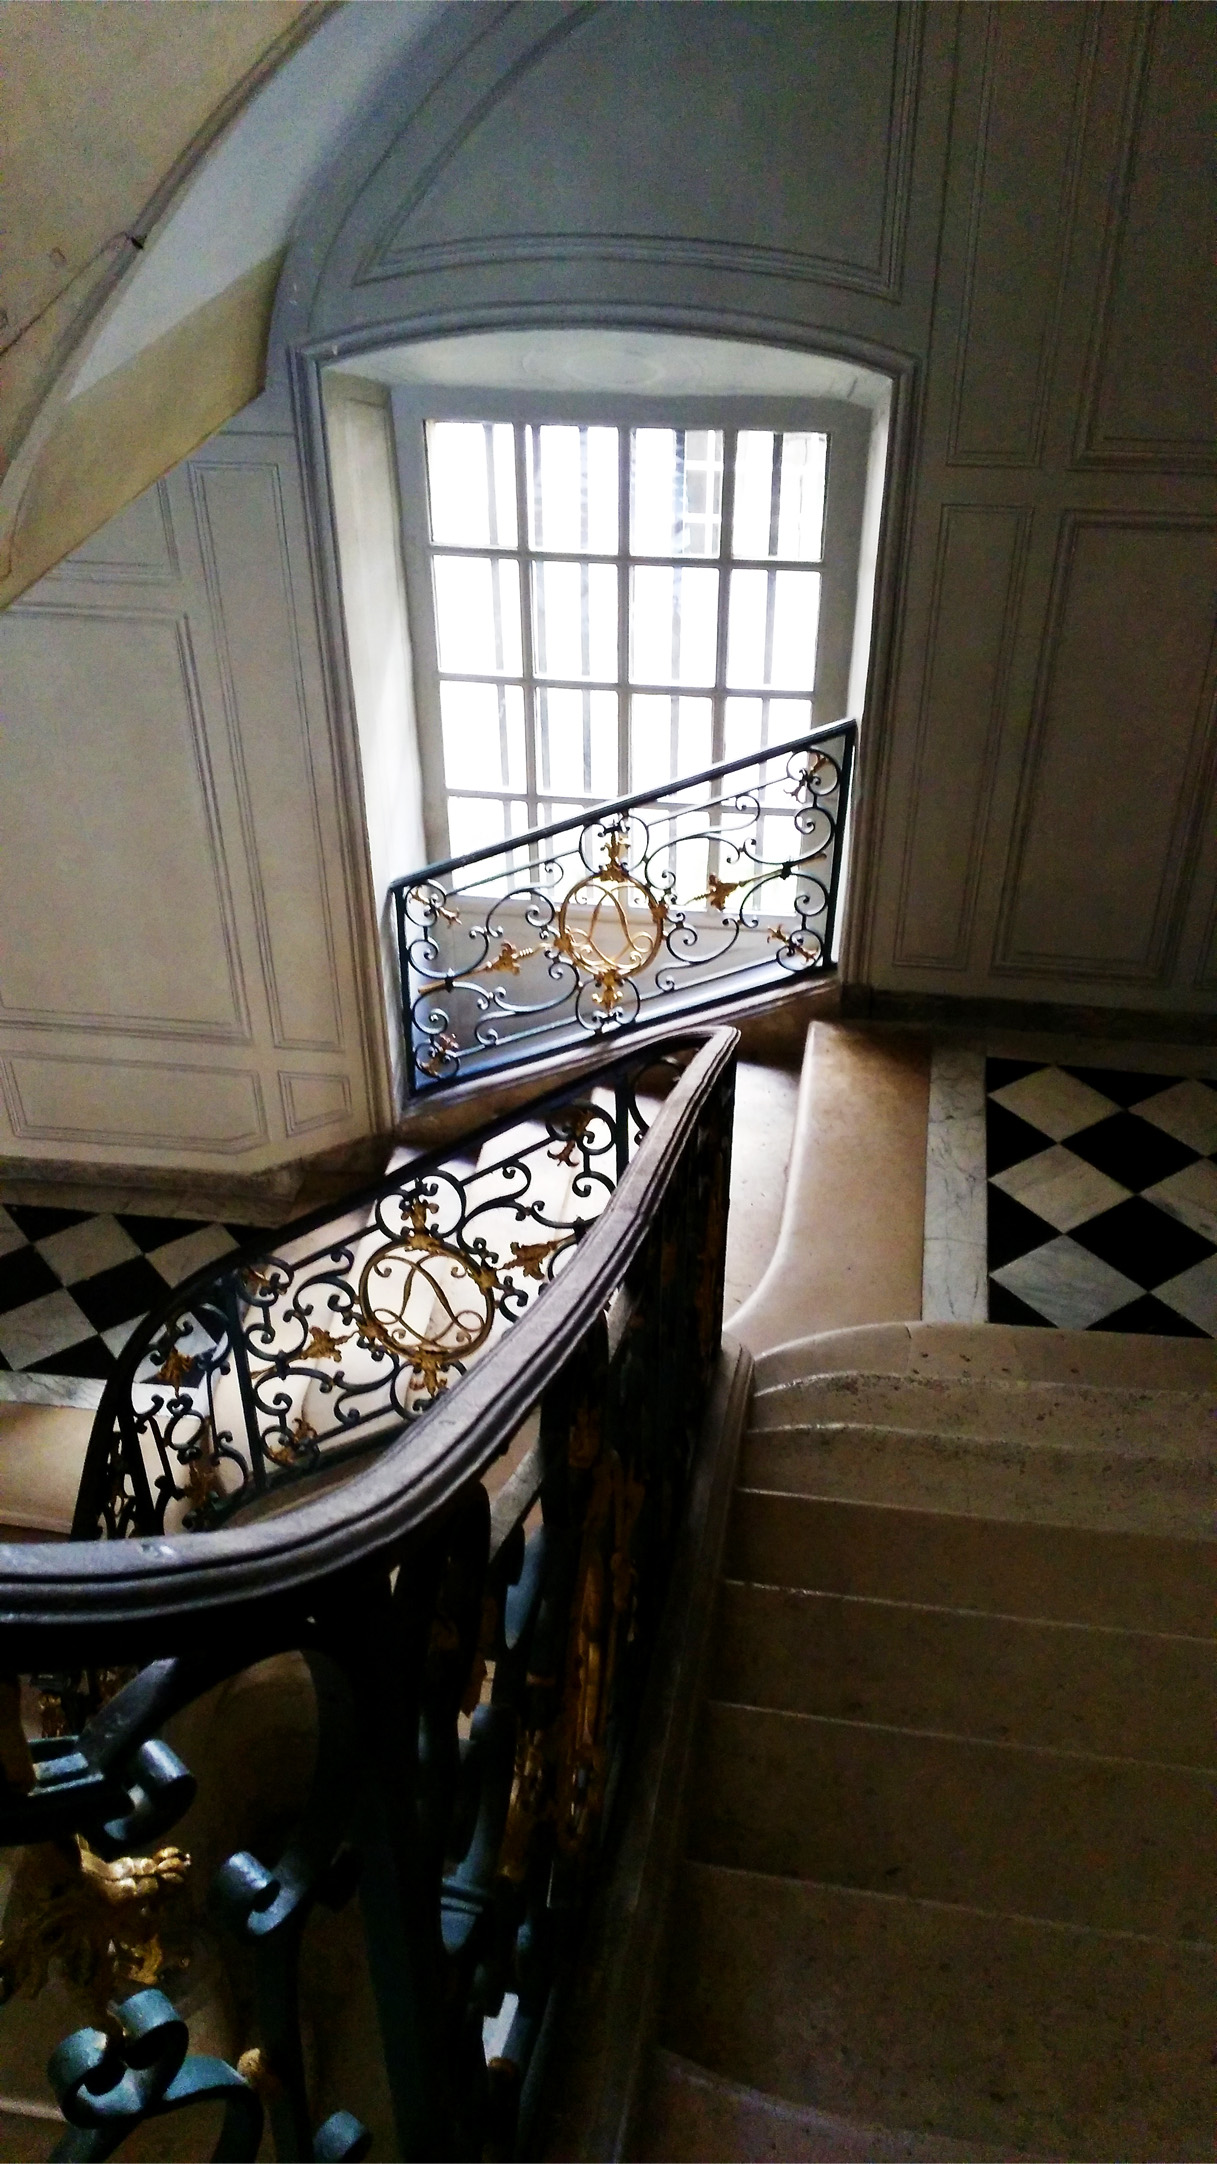 Palace of Versaille secret rooms tour